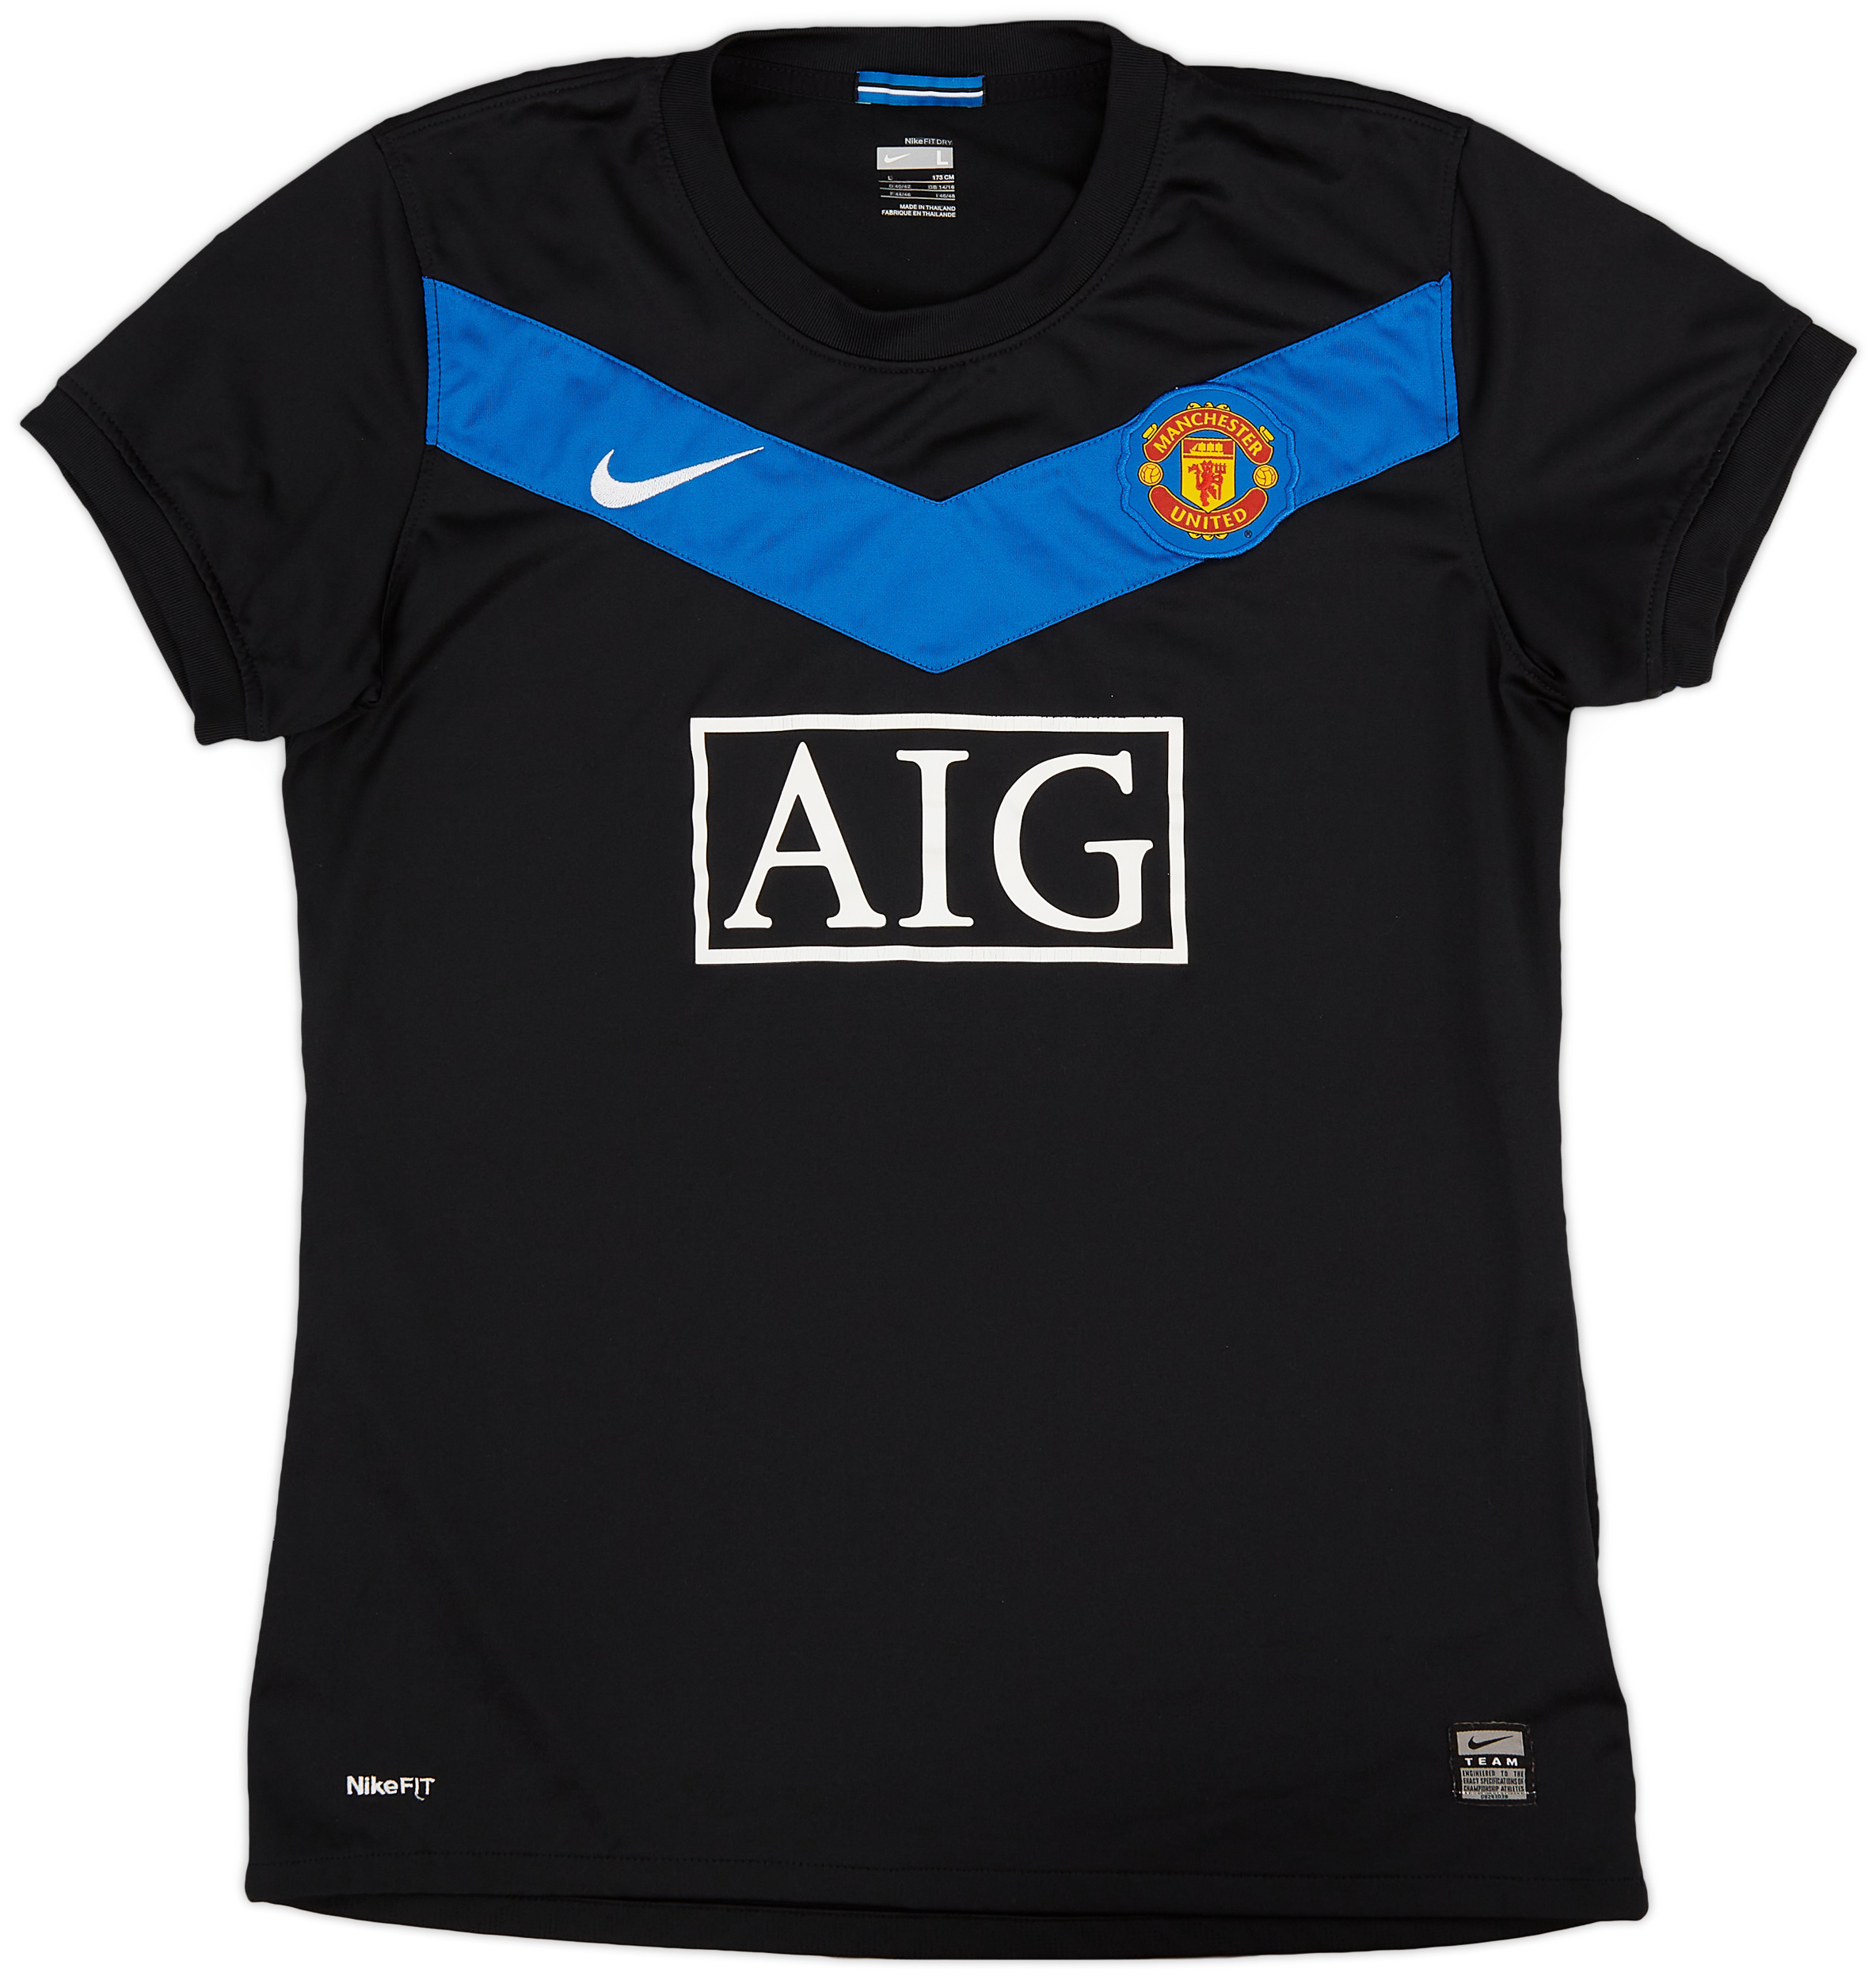 2009-10 Manchester United Away Shirt - 7/10 - Women's ()